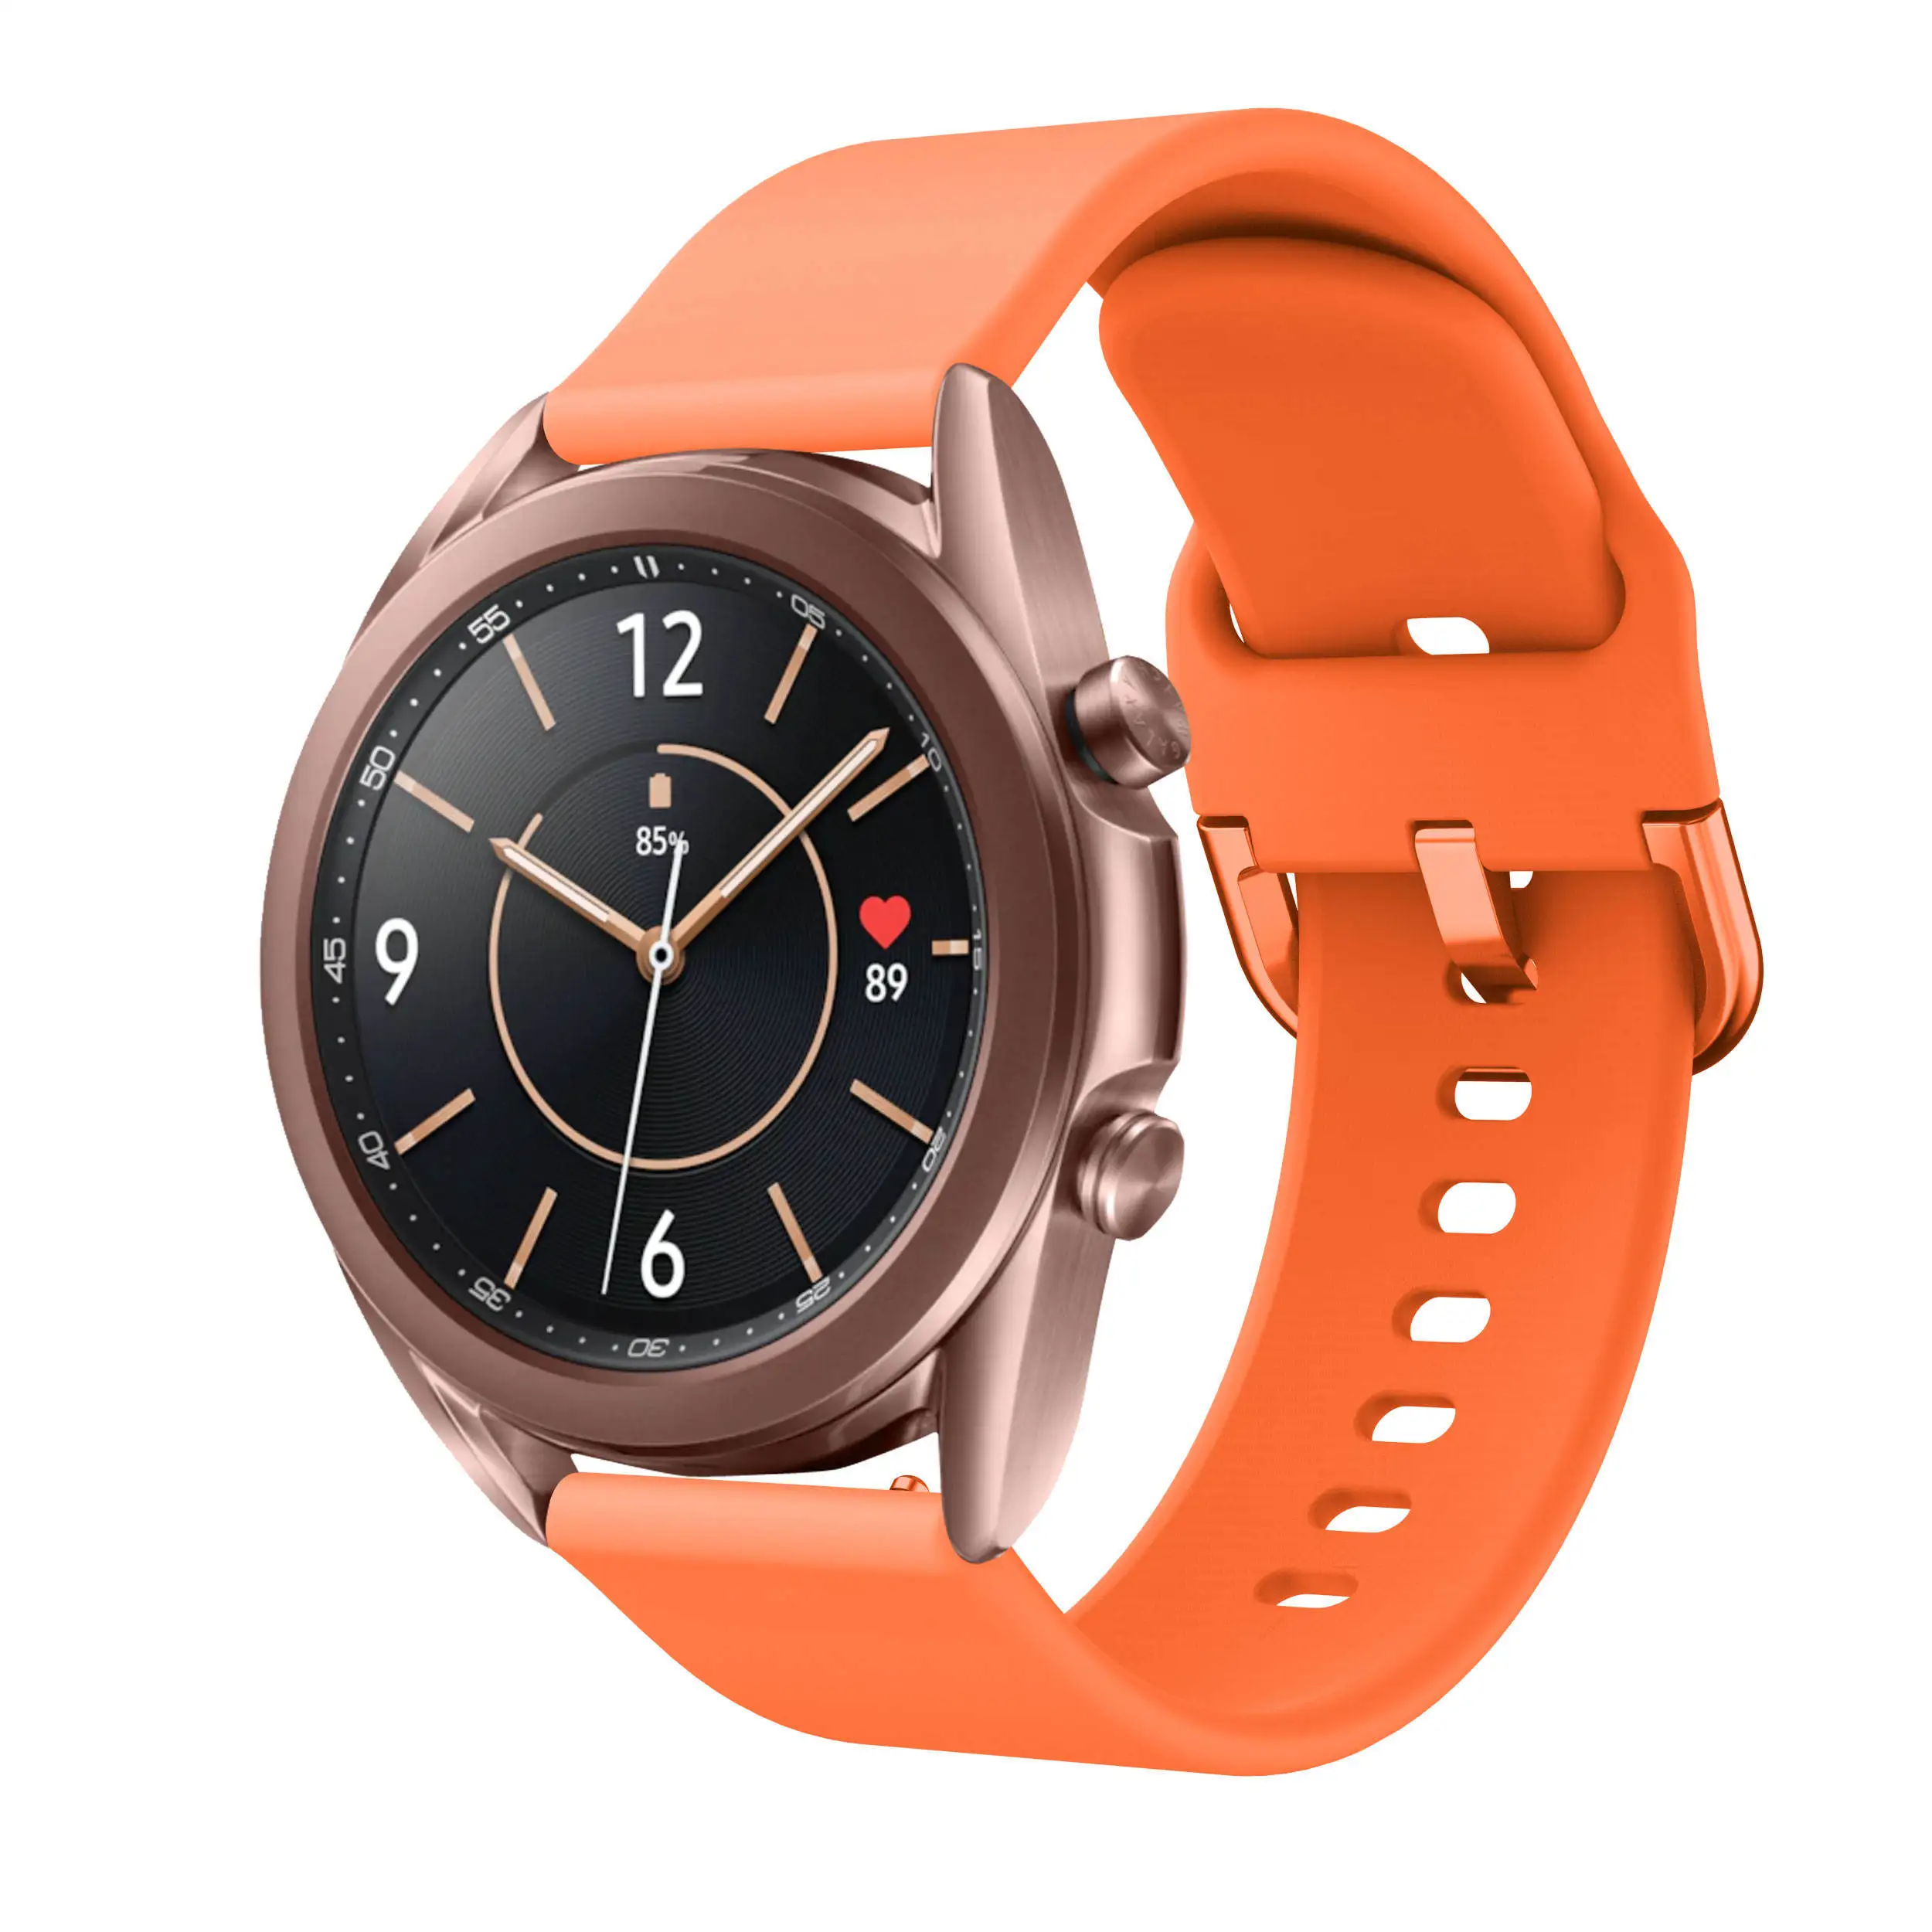 Correa de silicona para Samsung Galaxy watch 3, pulsera deportiva inteligente de 45mm, 41mm, 42mm y 46mm, 20mm y 22mm